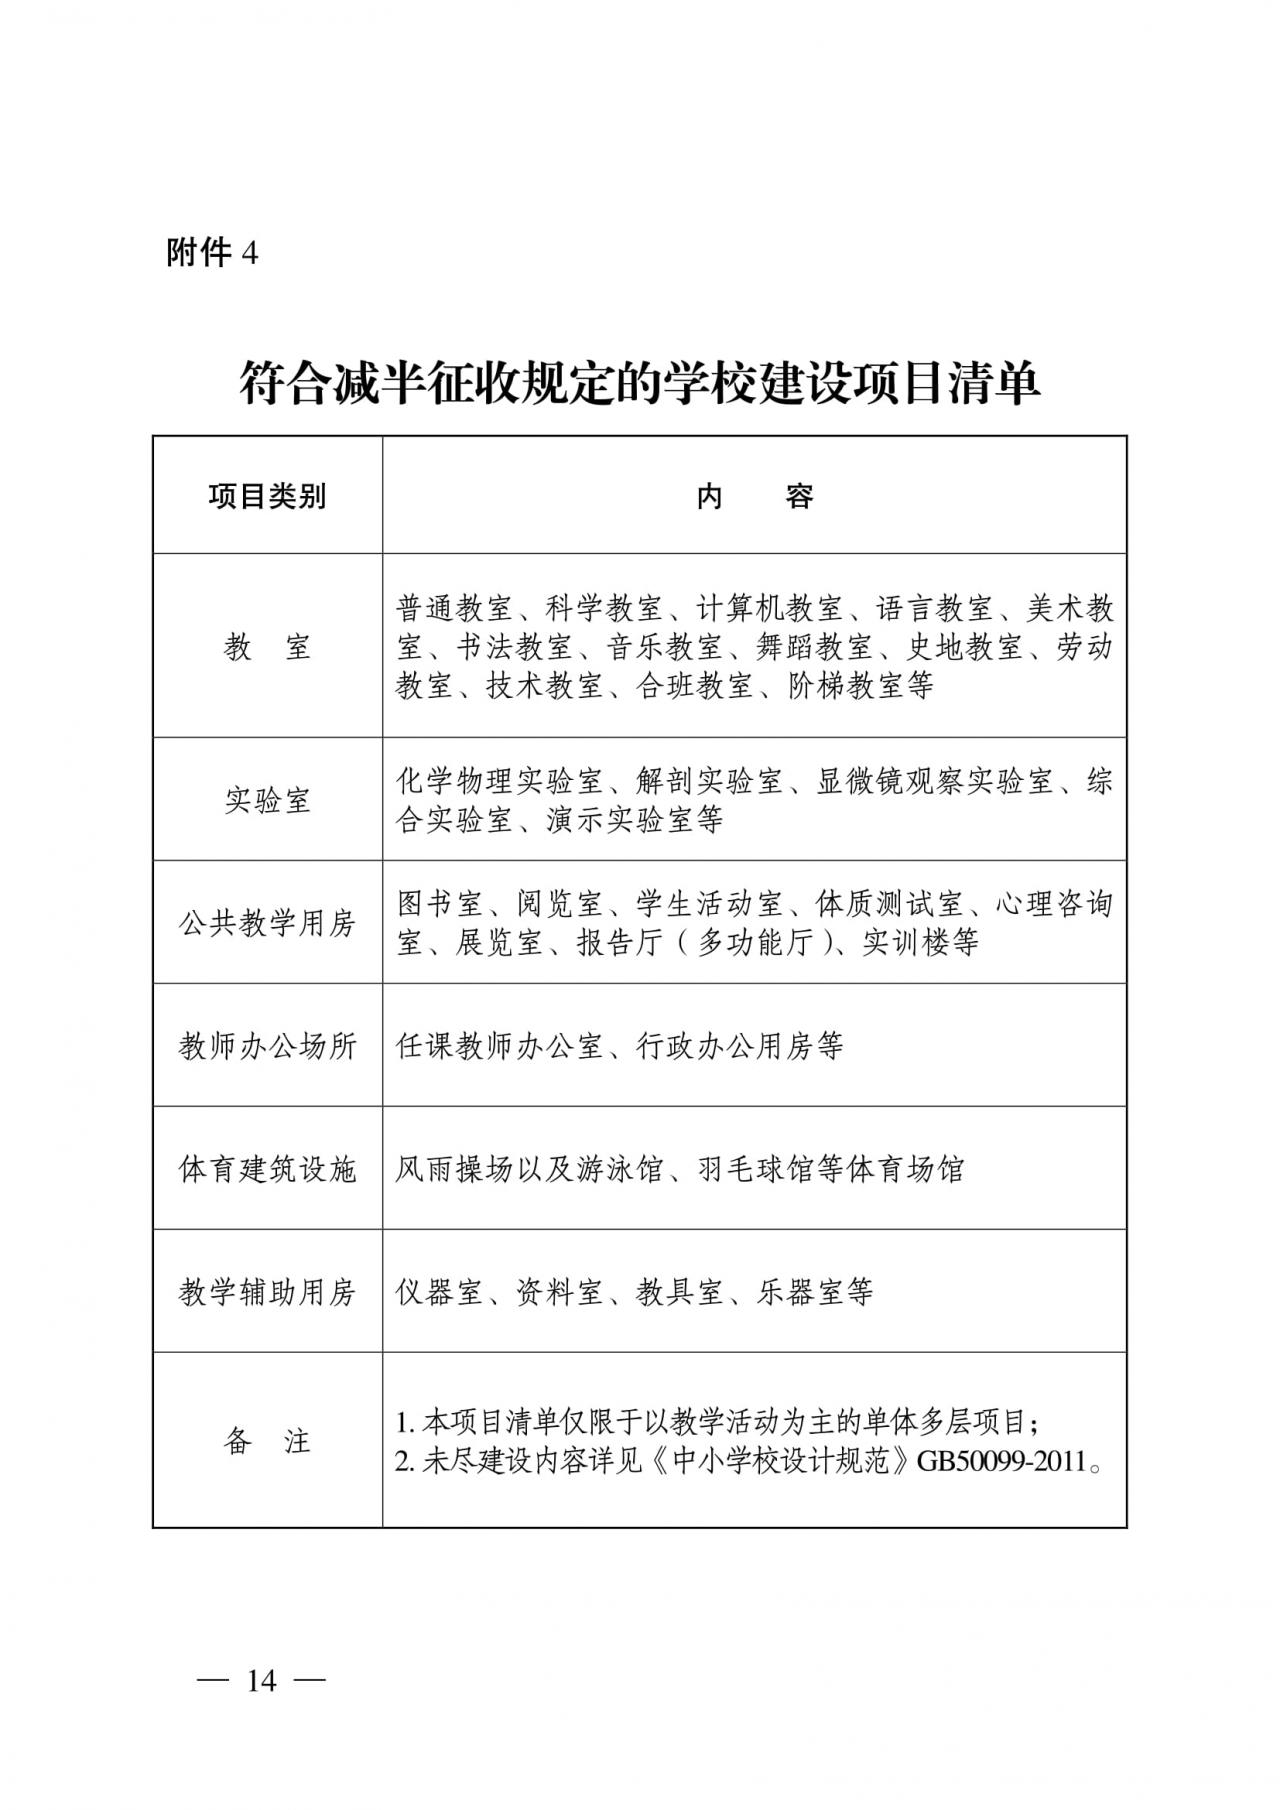 《江苏省防空地下室建设实施细则》文件